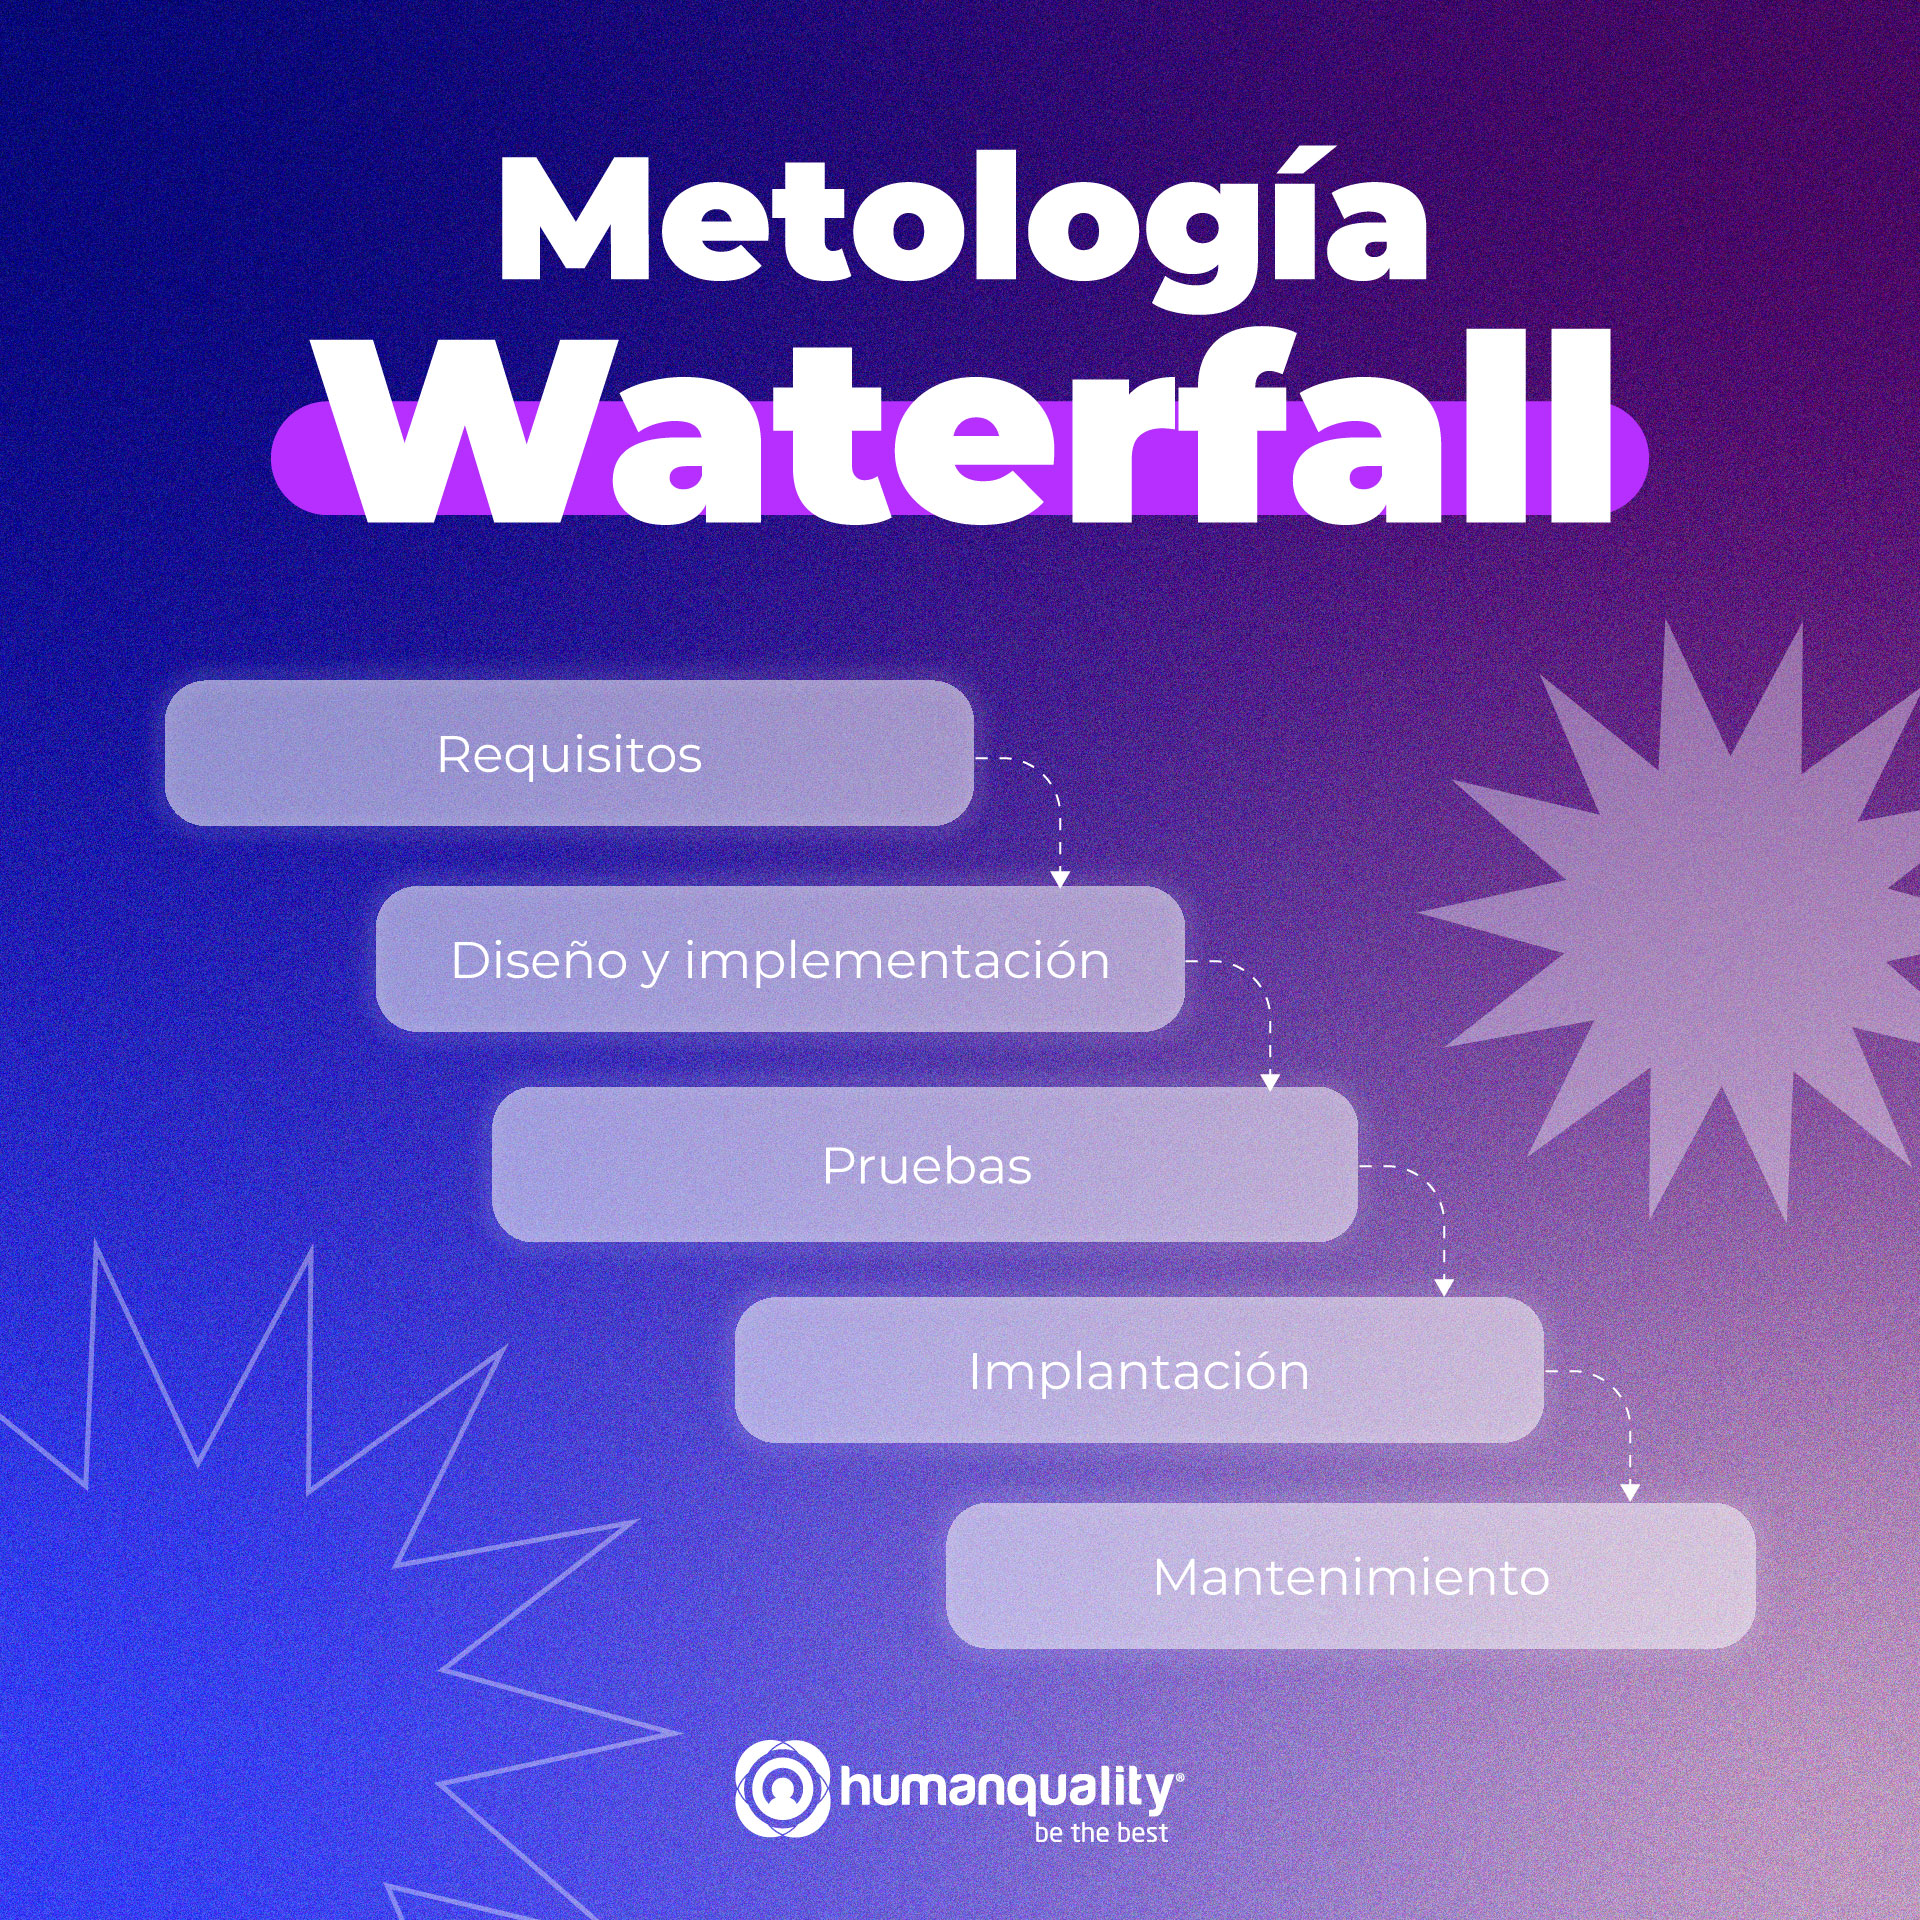 Metología Waterfall